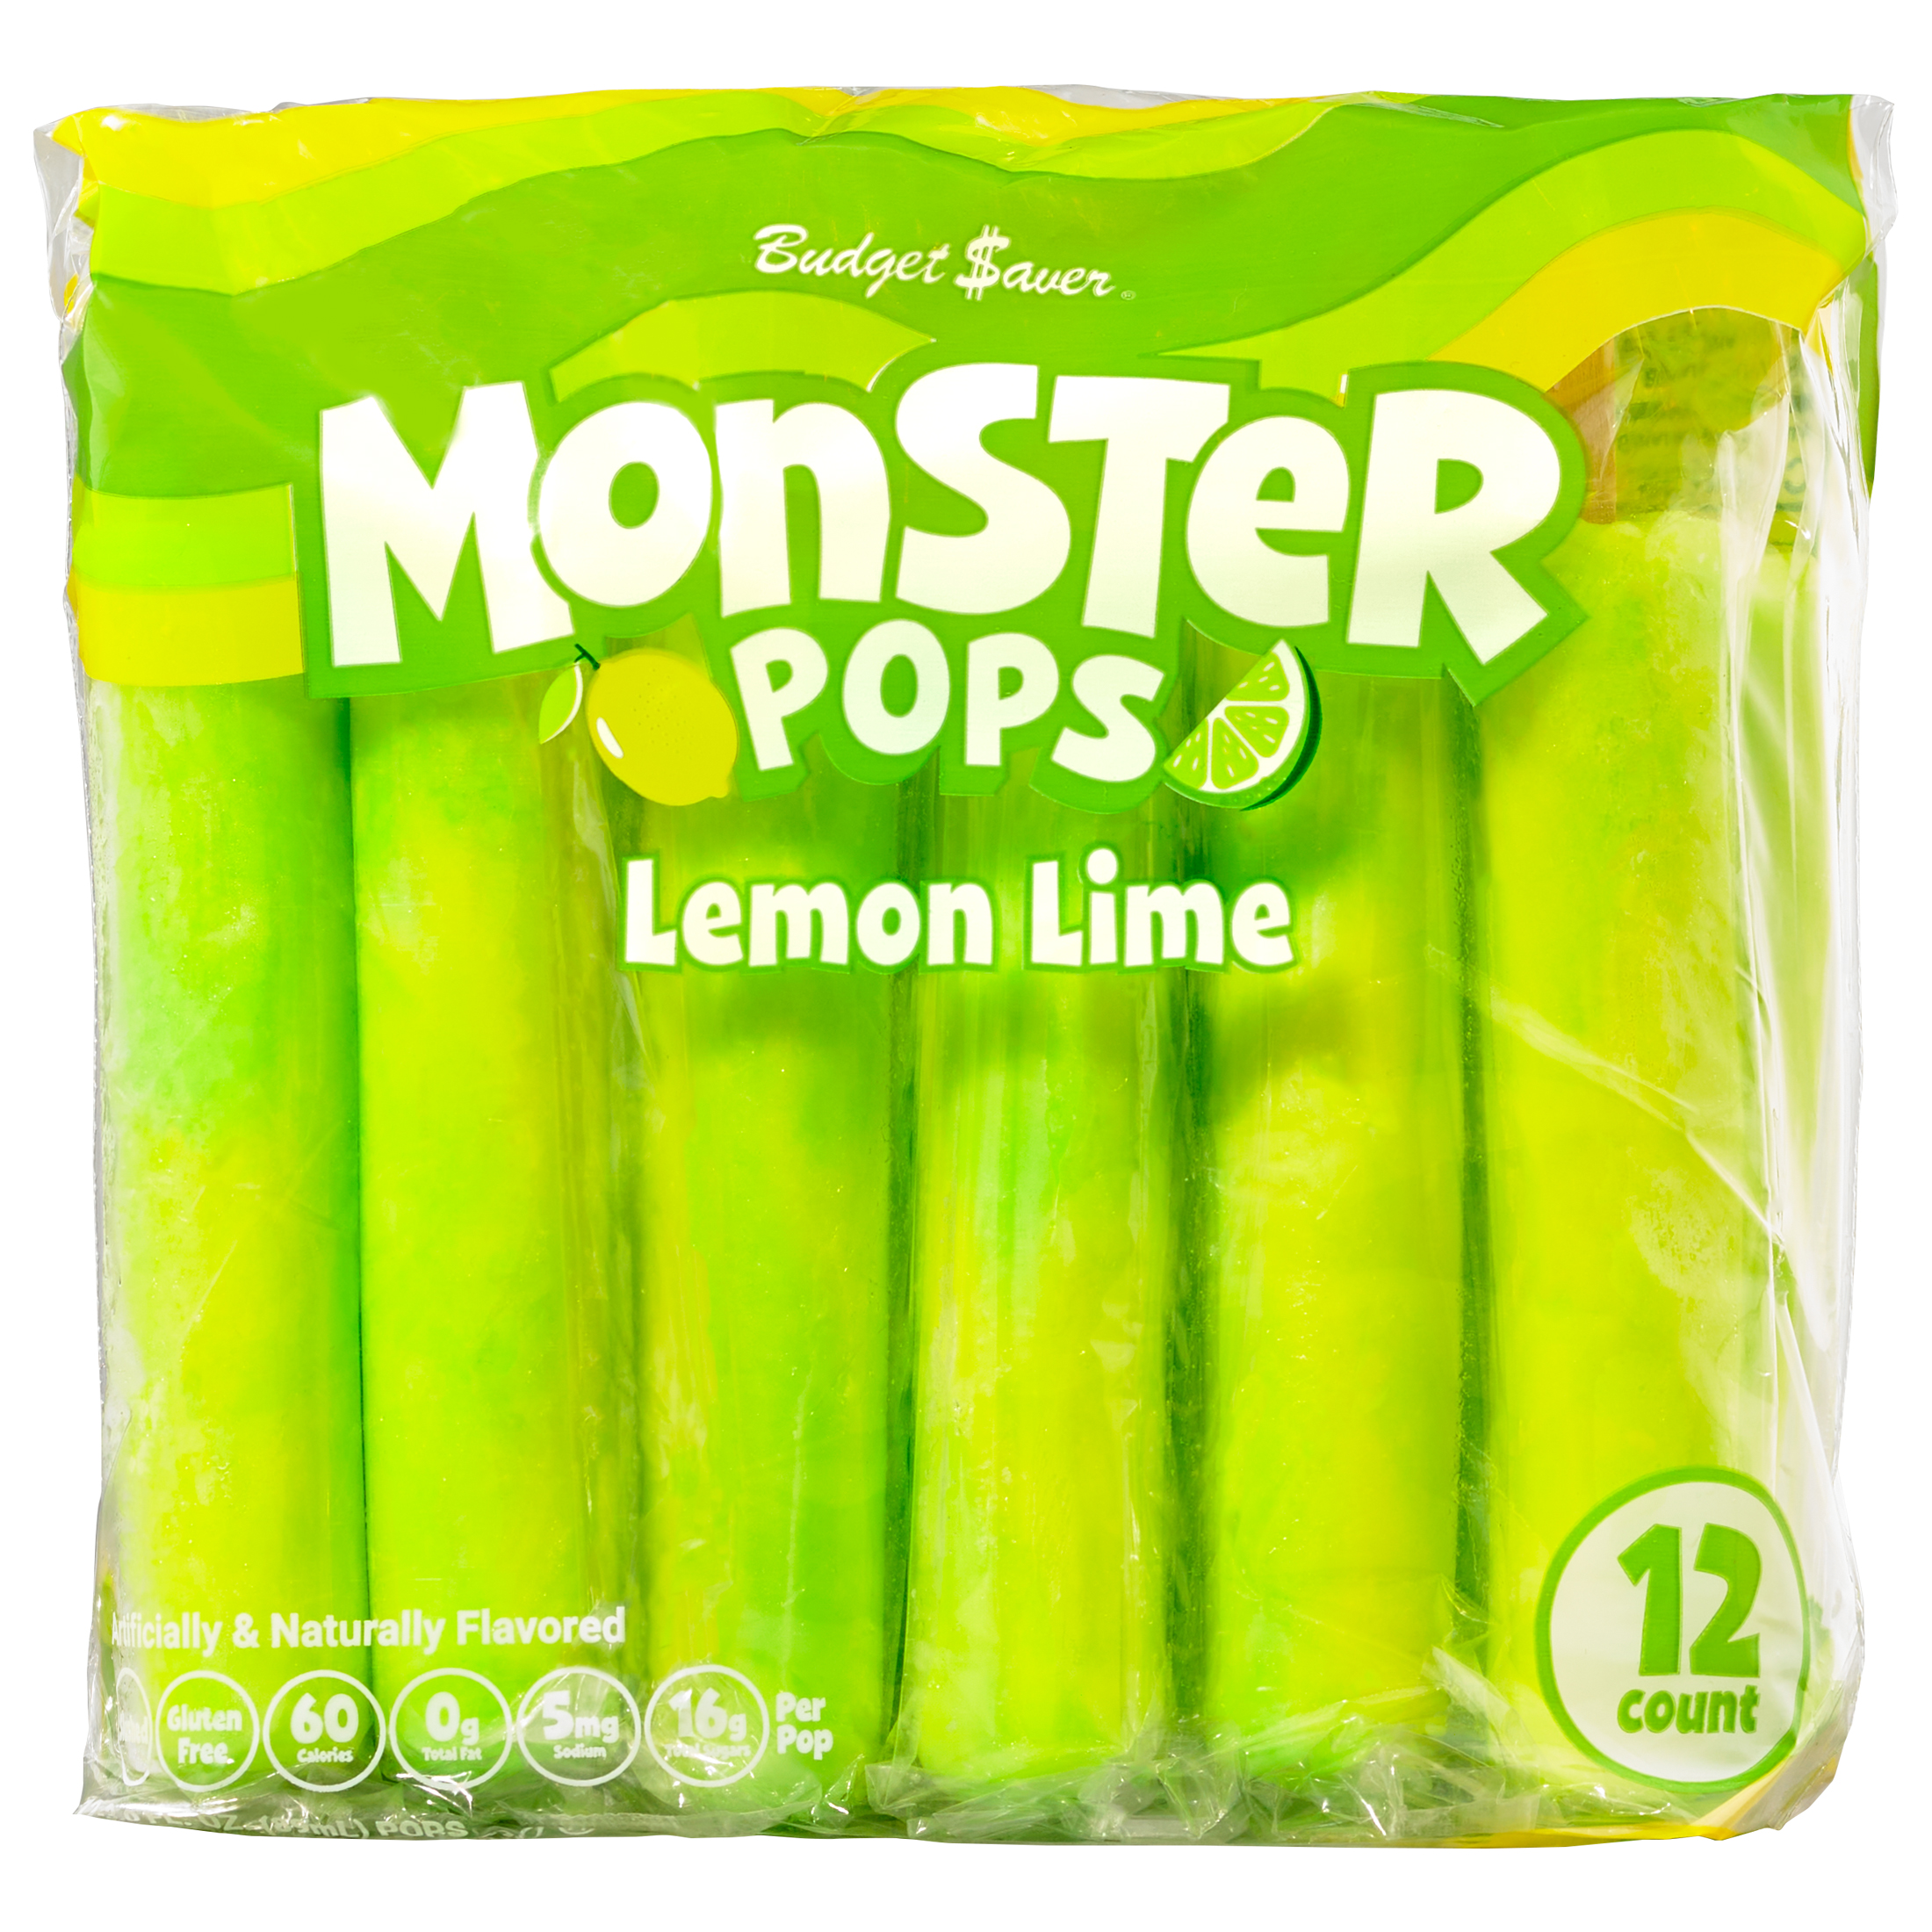 Budget Saver Slushed Lemon-Lime Monster Pops, 12 Ct - image 1 of 6